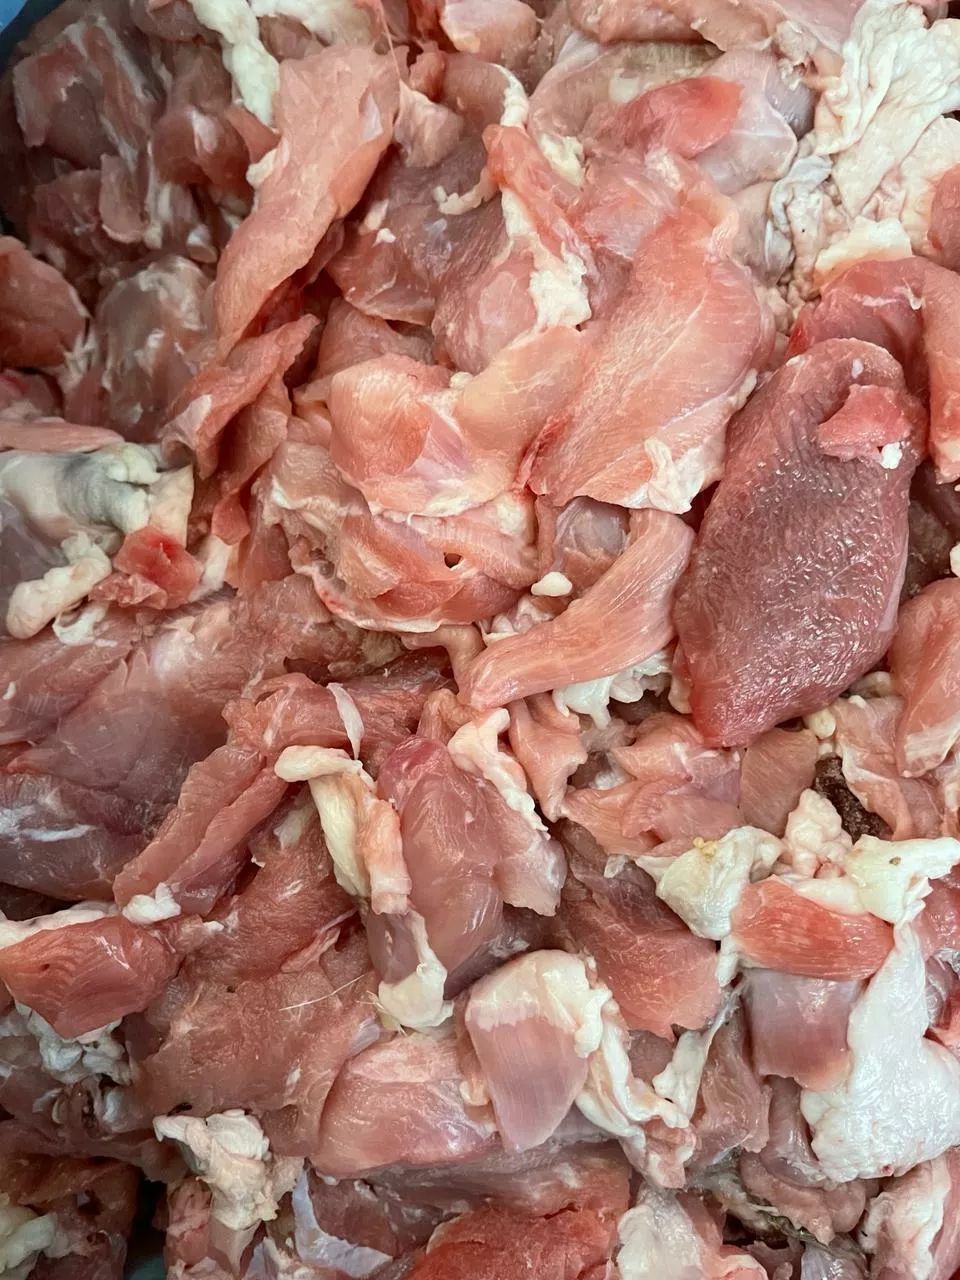 мясо для тушения (обрезь красного мяса) в Ставрополе и Ставропольском крае